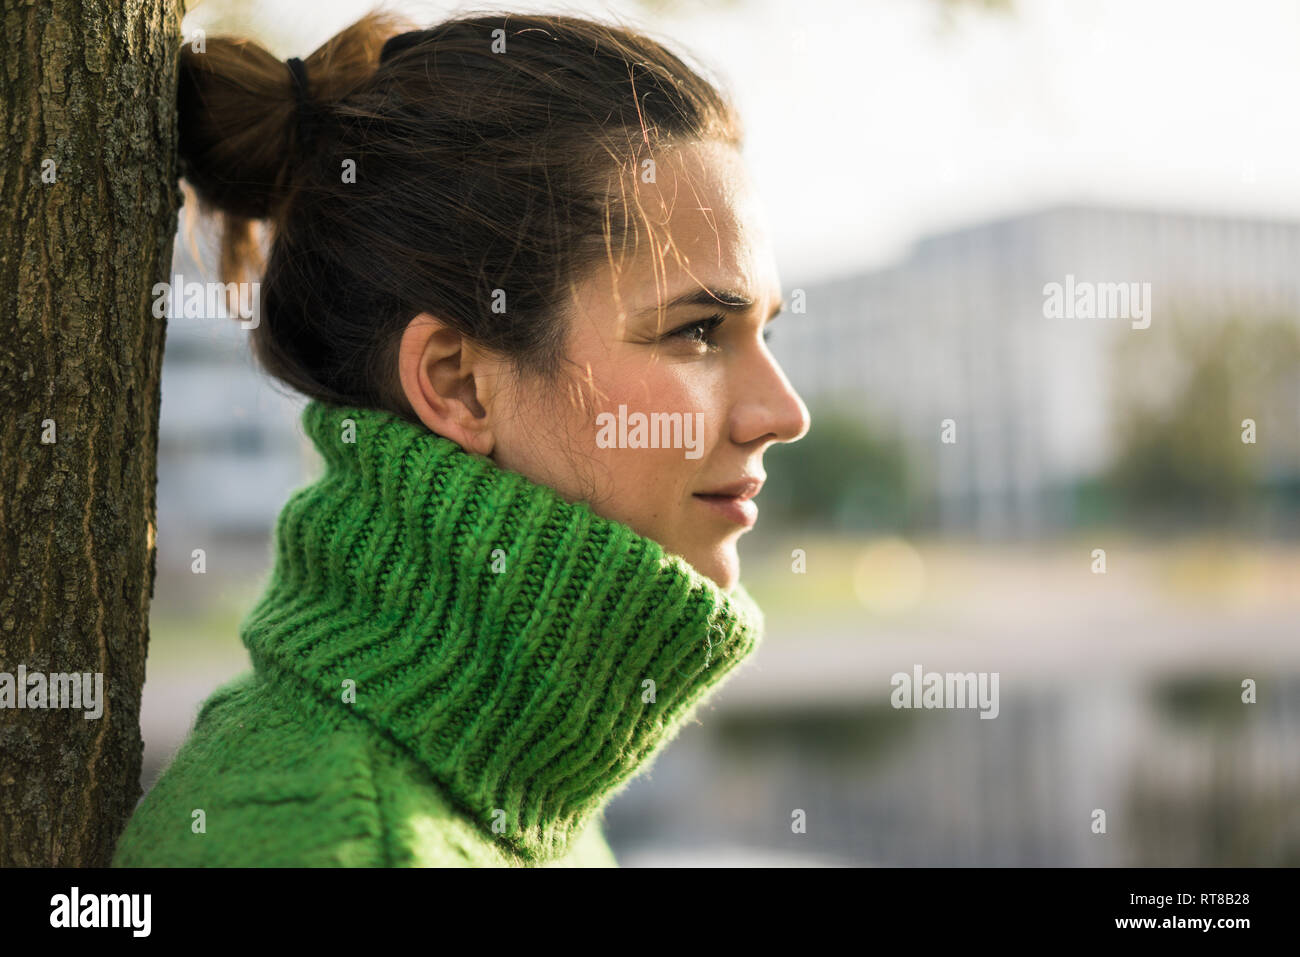 Profil von entspannt Frau mit grünen rollkragen pullover lehnte sich gegen Baumstamm Stockfoto